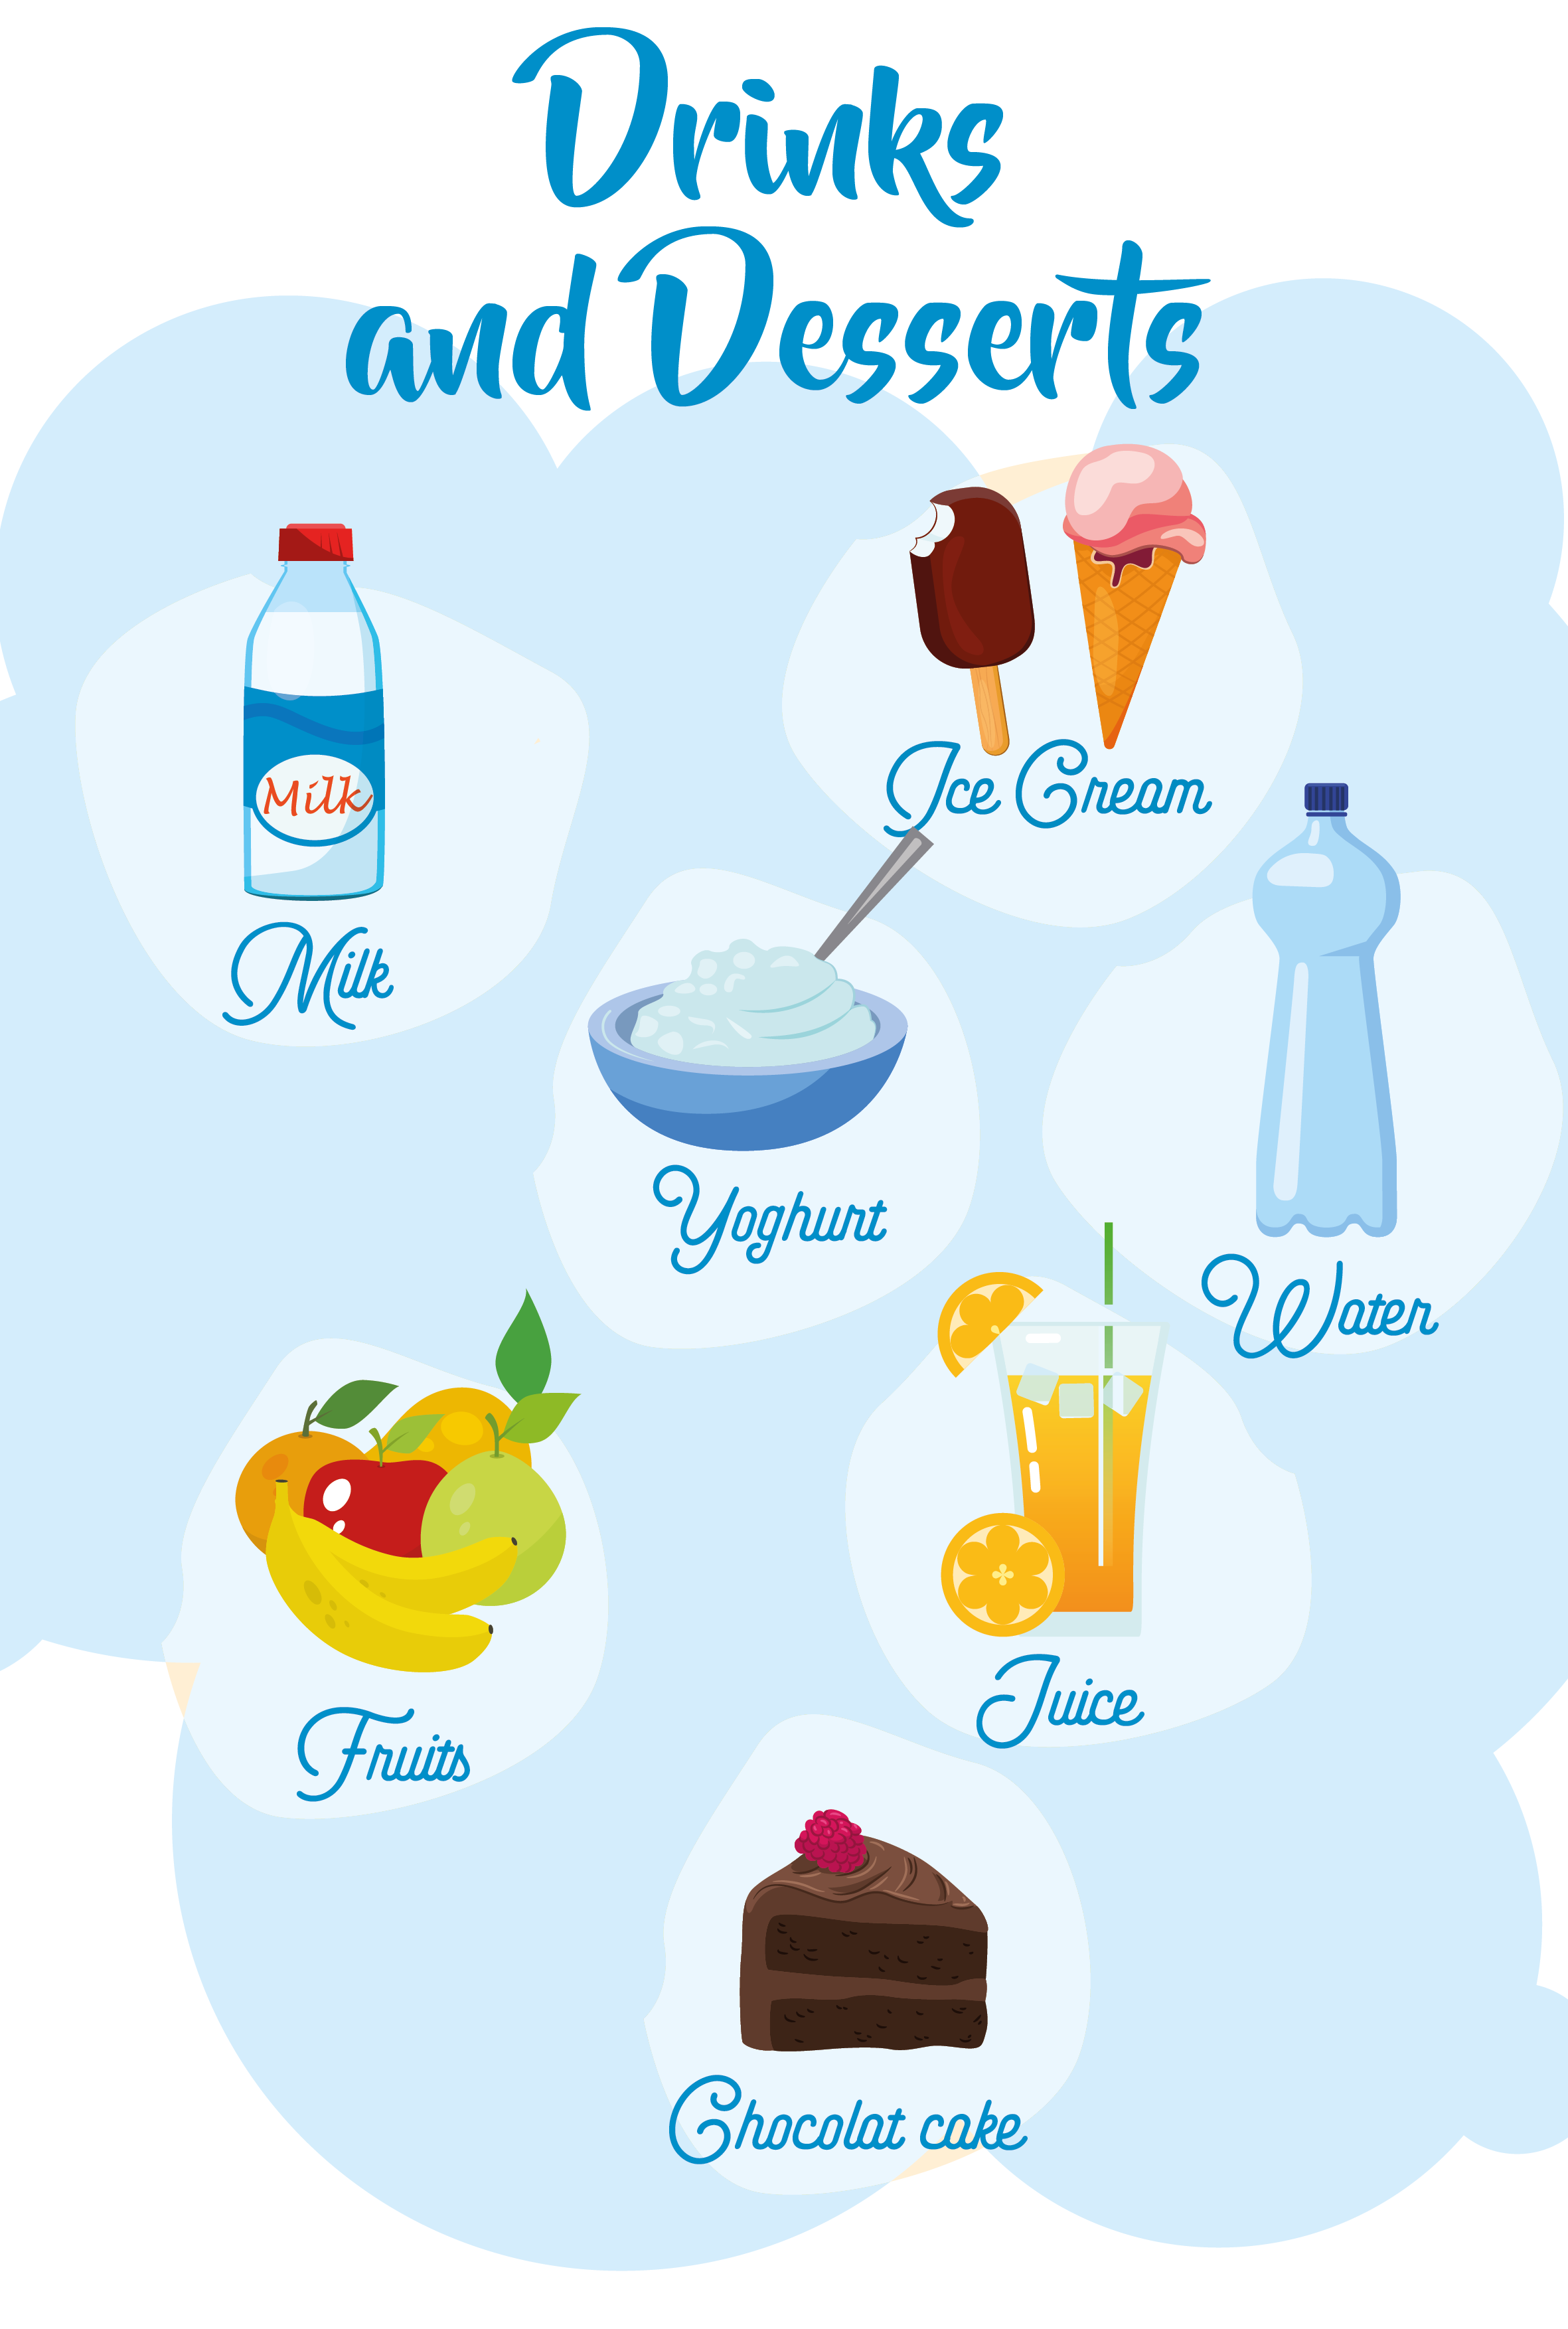 En la imagen aparecen varias bebidas y distintos postres. Las bebidas que se ilustran son: agua (en inglés, water), leche (en inglés, milk) y zumo de naranja (en inglés, orange juice). En cuanto a los postres, aparecen: una cesta con frutas (en inglés, fruits), un helado (en inglés, ice-cream), un trozo de tarta de chocolate (chocolate cake) y un yogurt (en inglés, yoghurt)